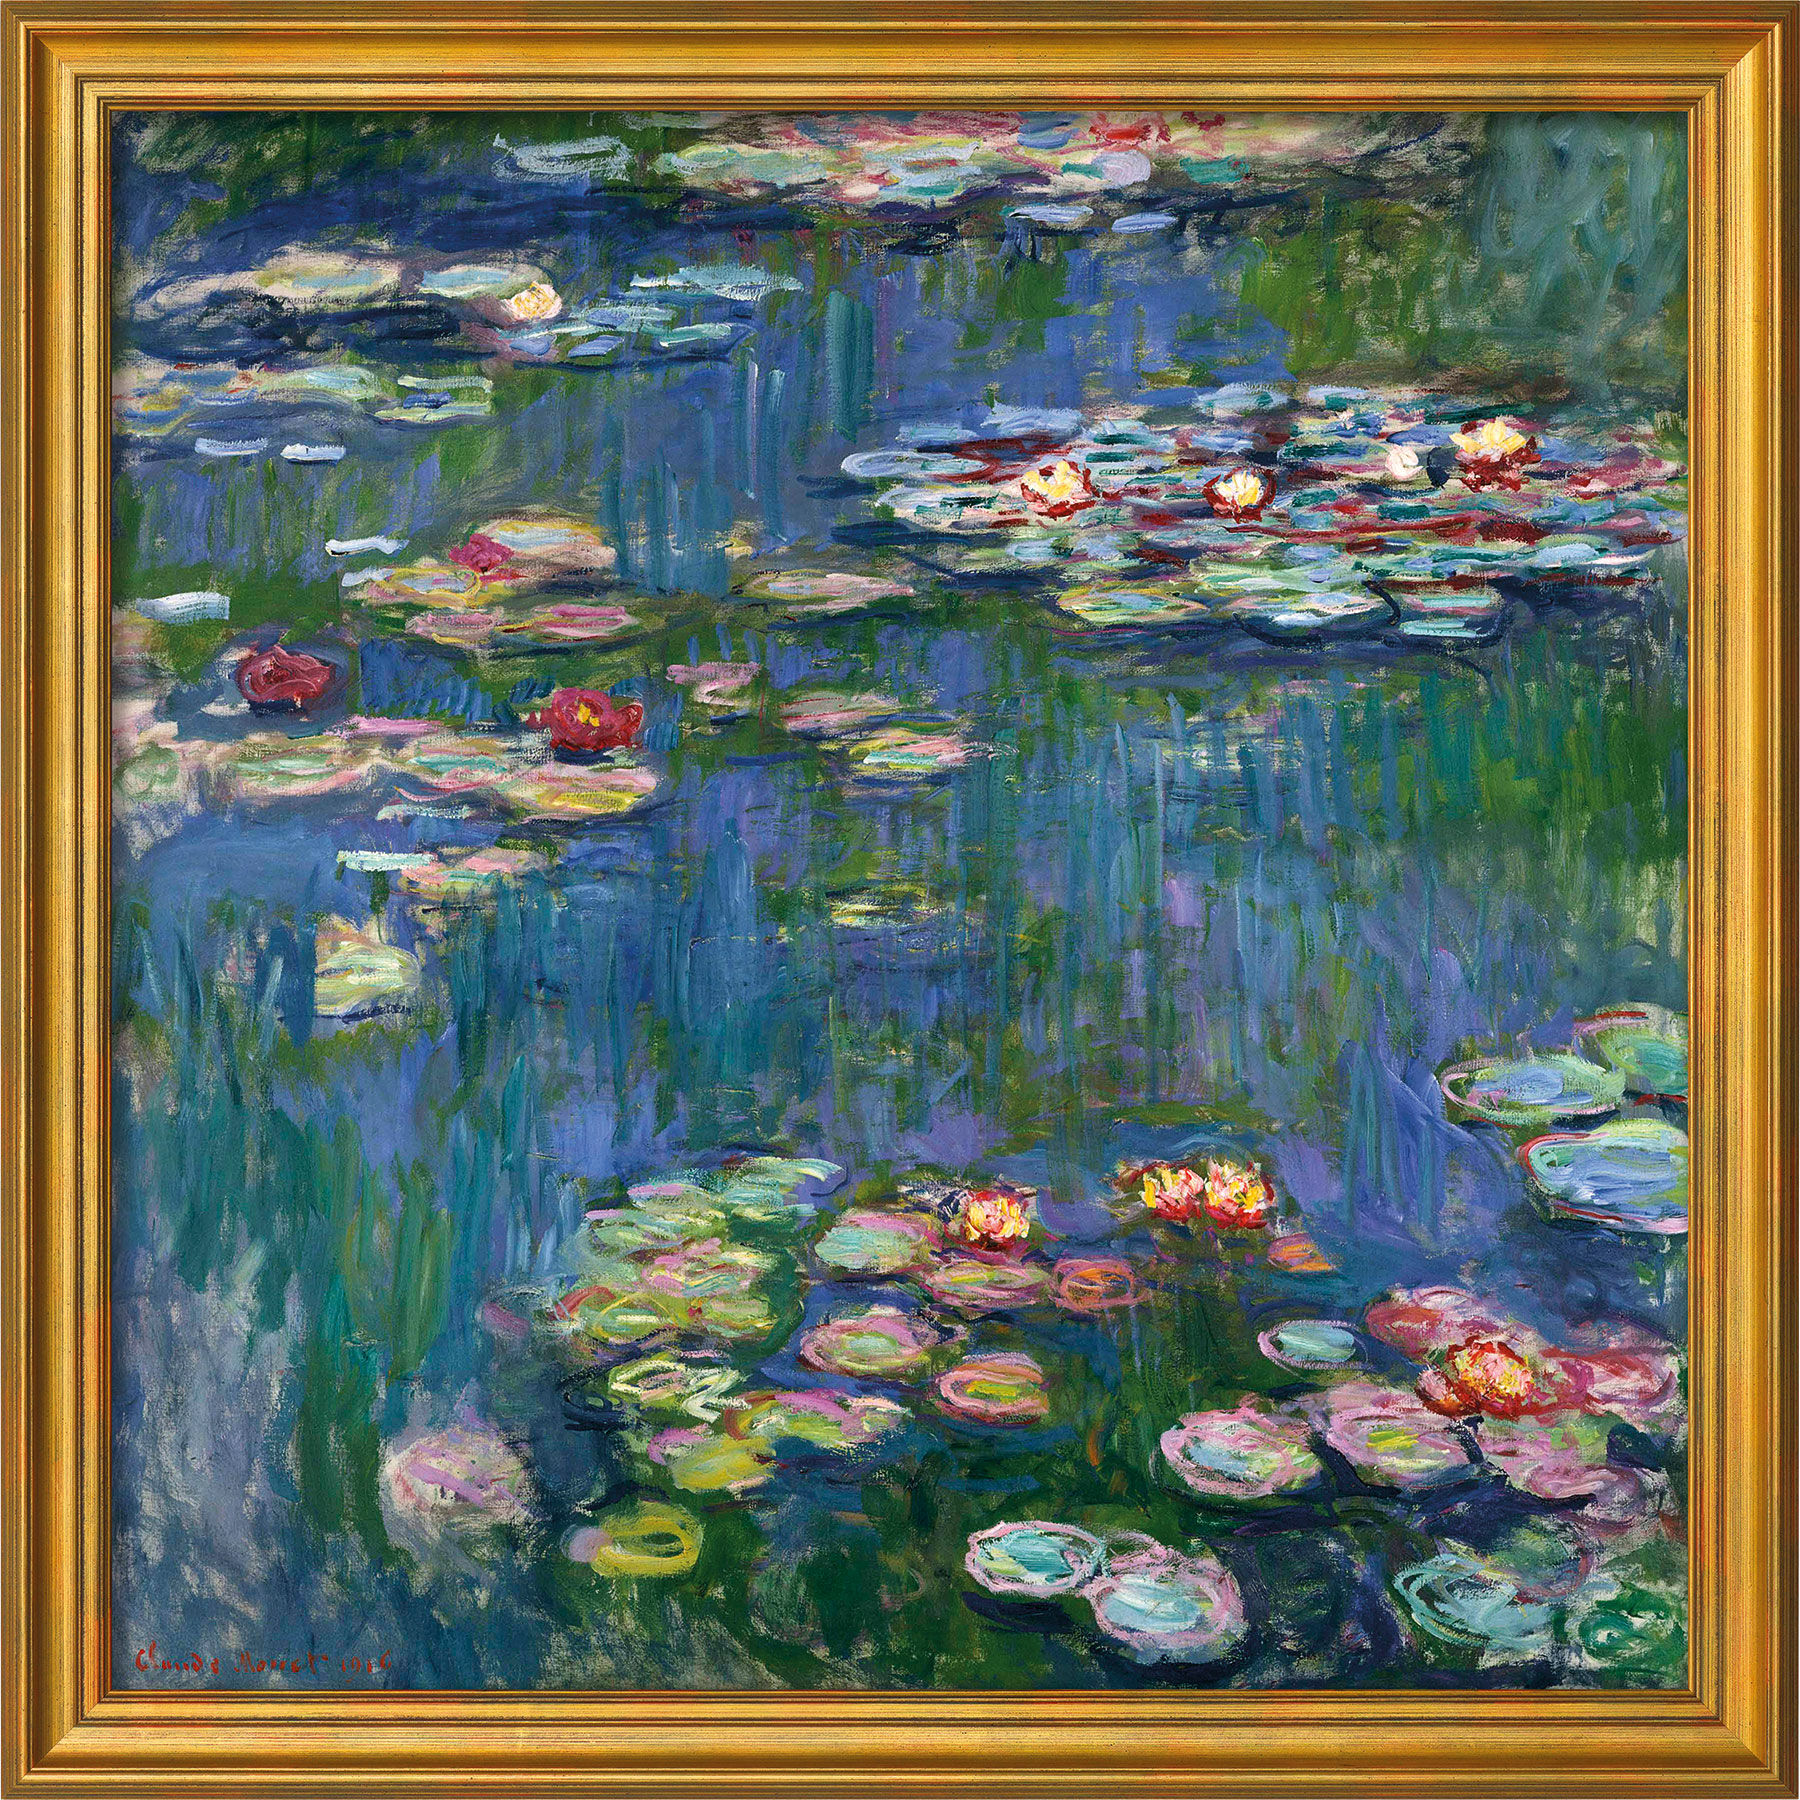 Beeld "Waterlelies" (1916), goudomrande versie von Claude Monet